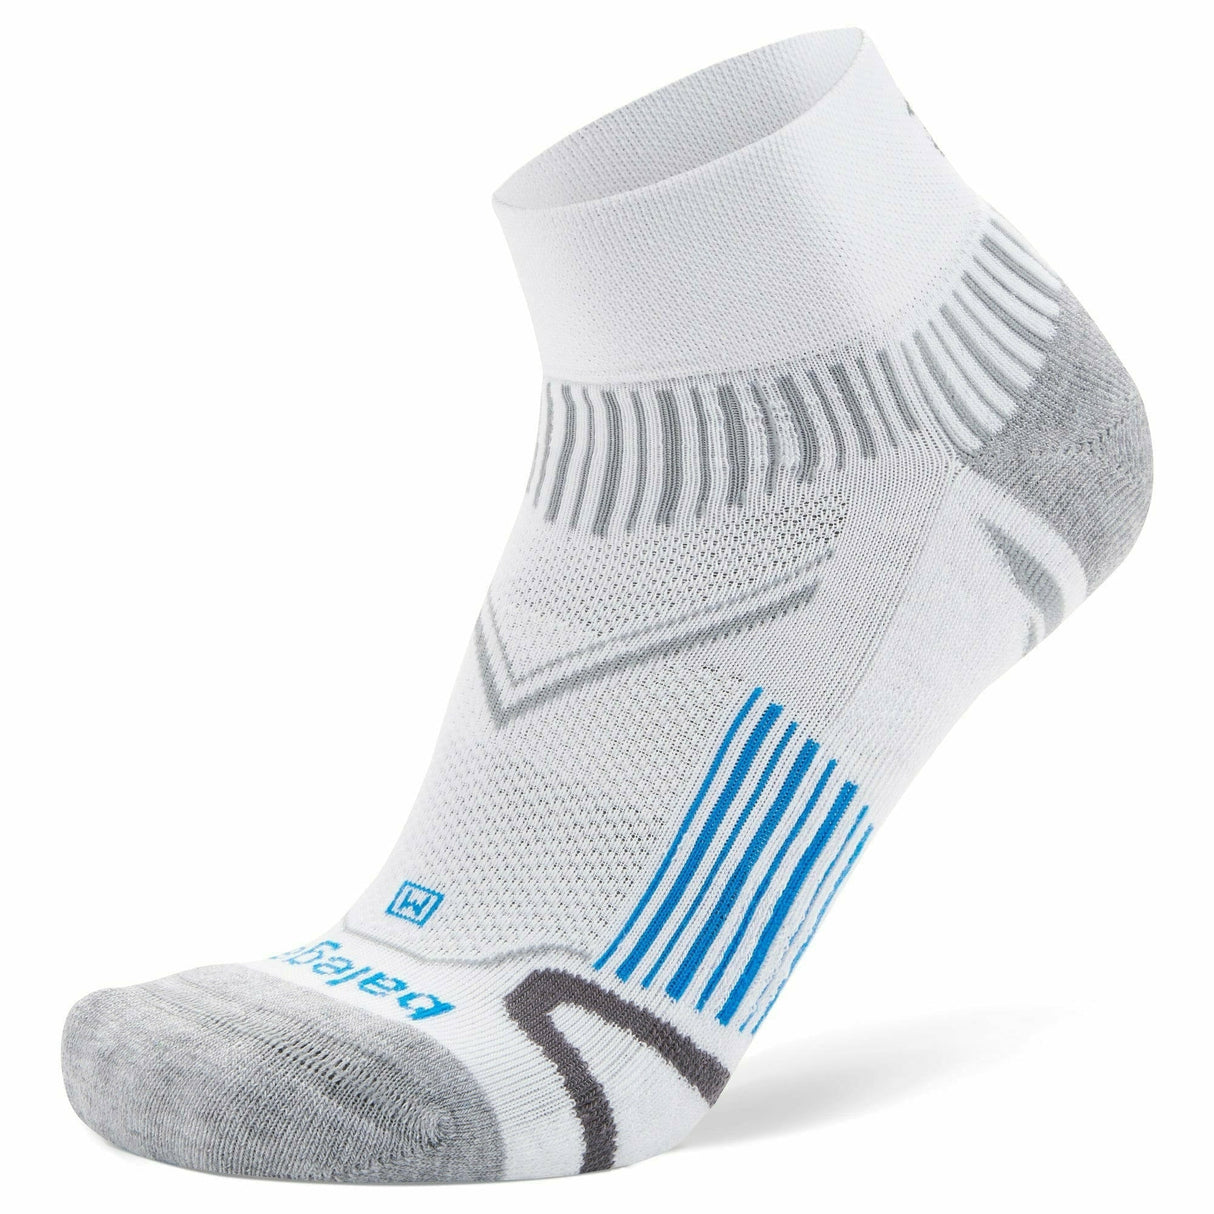 Balega Enduro Quarter Socks  -  Small / White/Blue